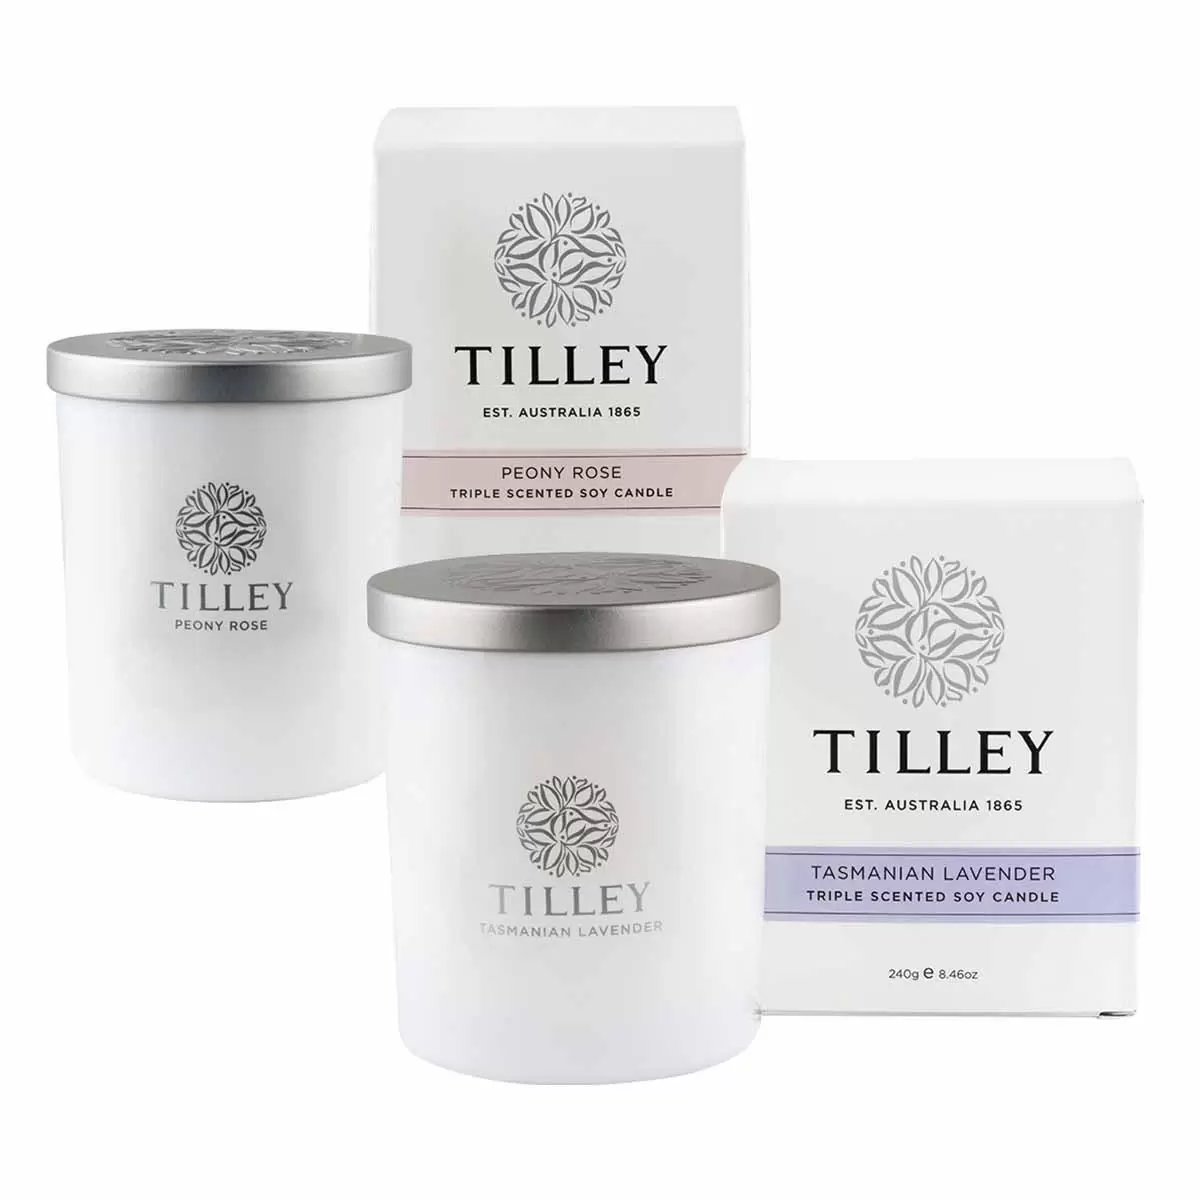 Tilley 微醺大豆香氛蠟燭2入組 塔斯馬尼亞薰衣草 + 牡丹玫瑰